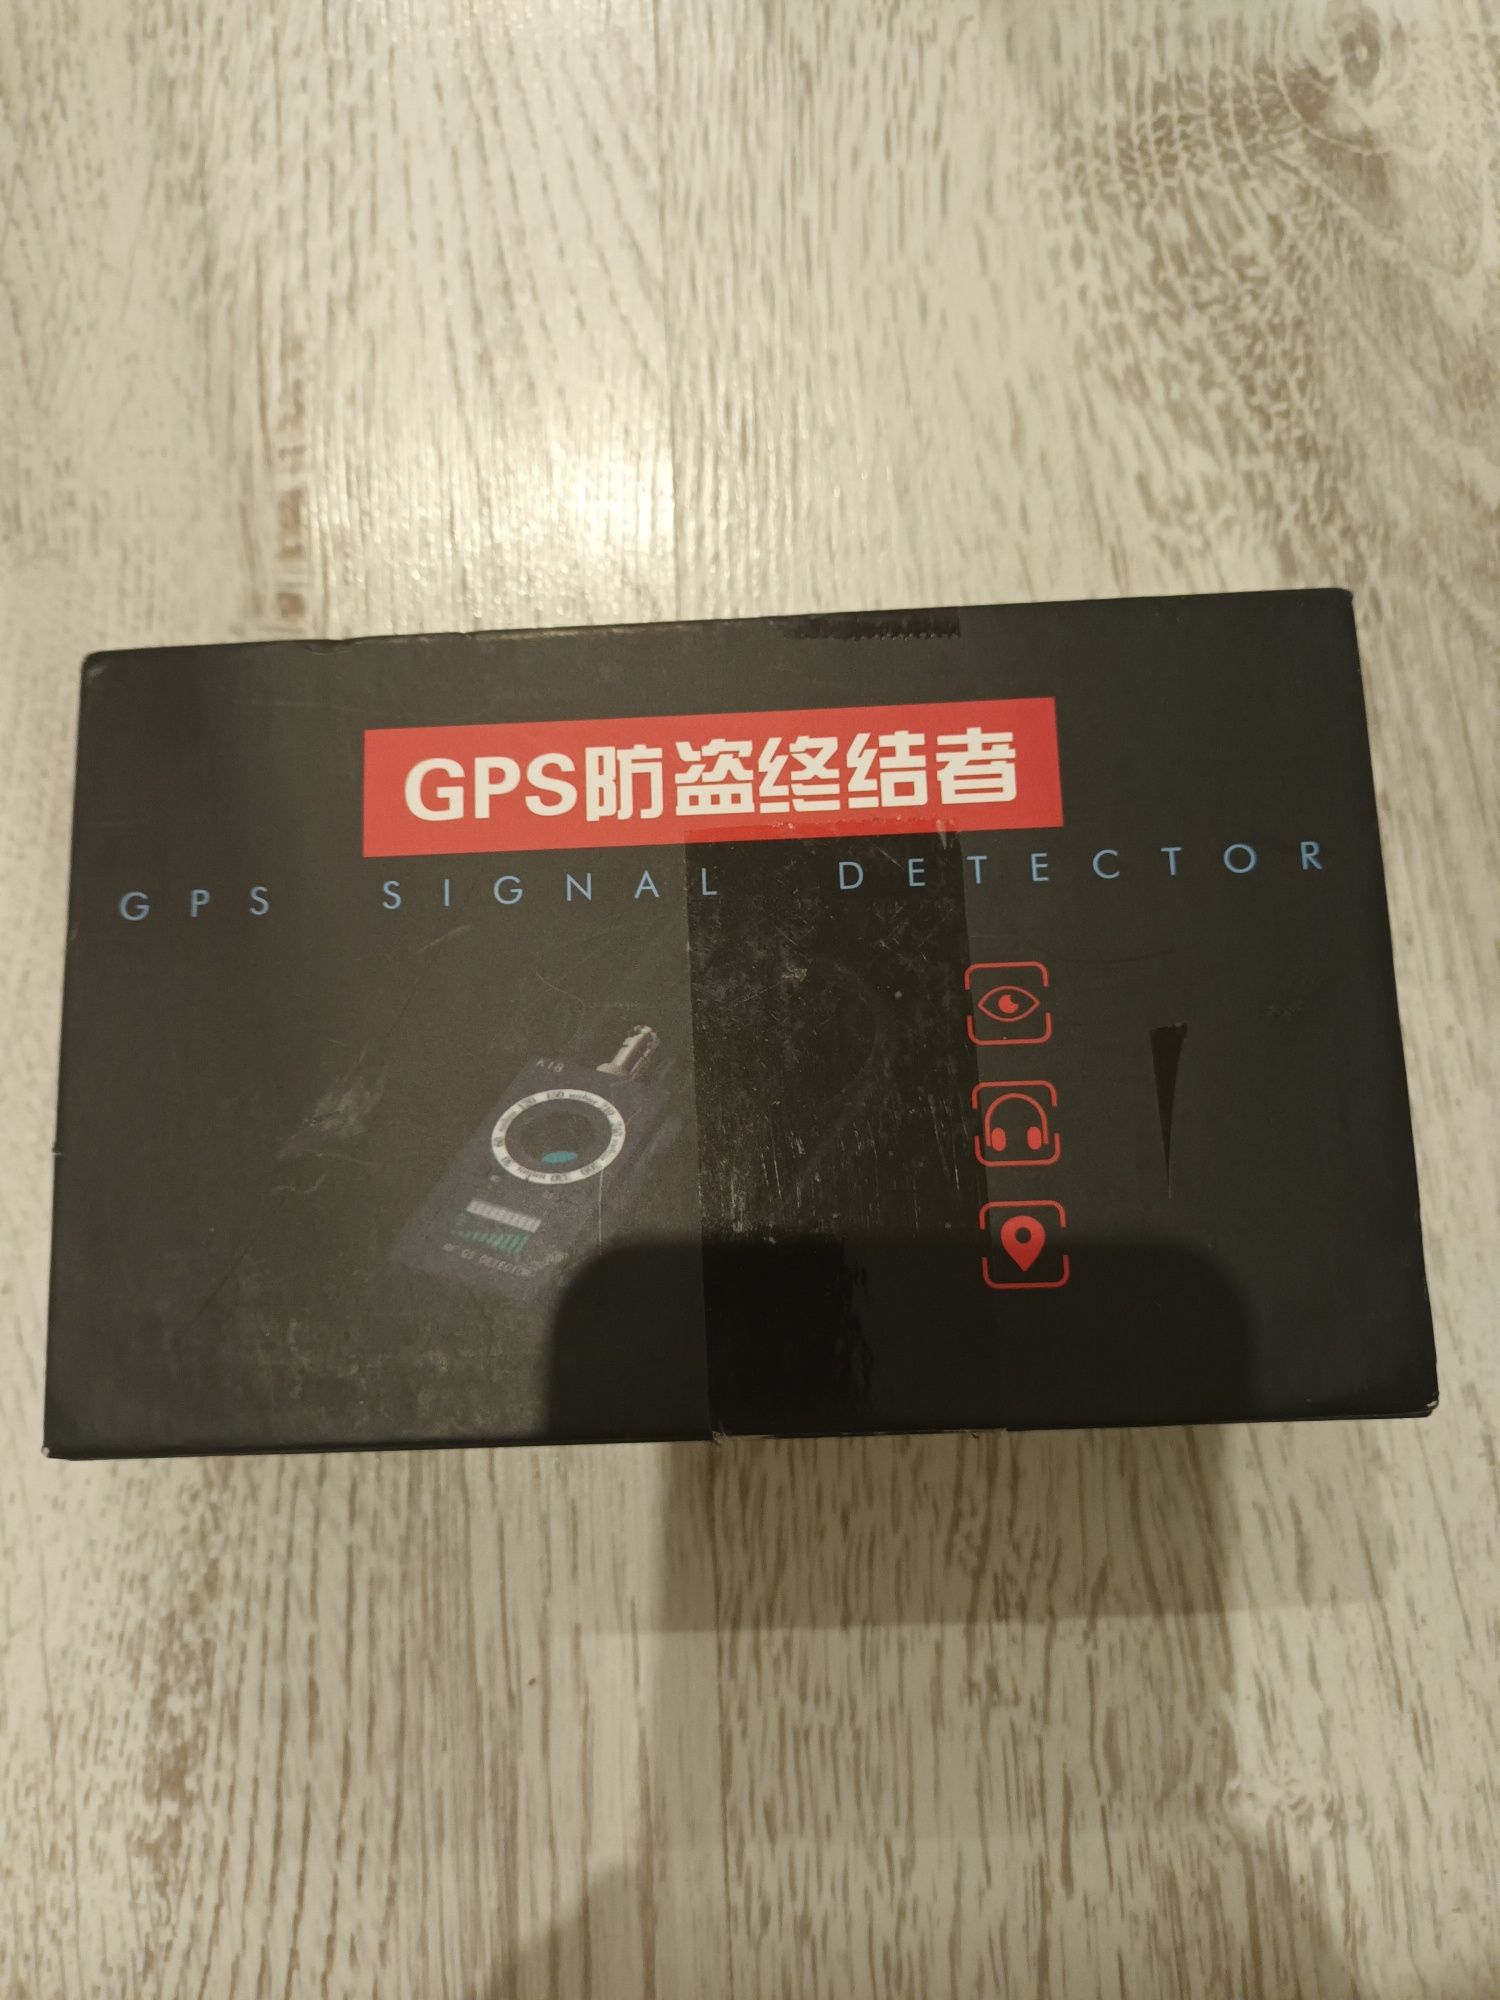 K18 wielofunkcyjny wykrywacz GPS, GSM